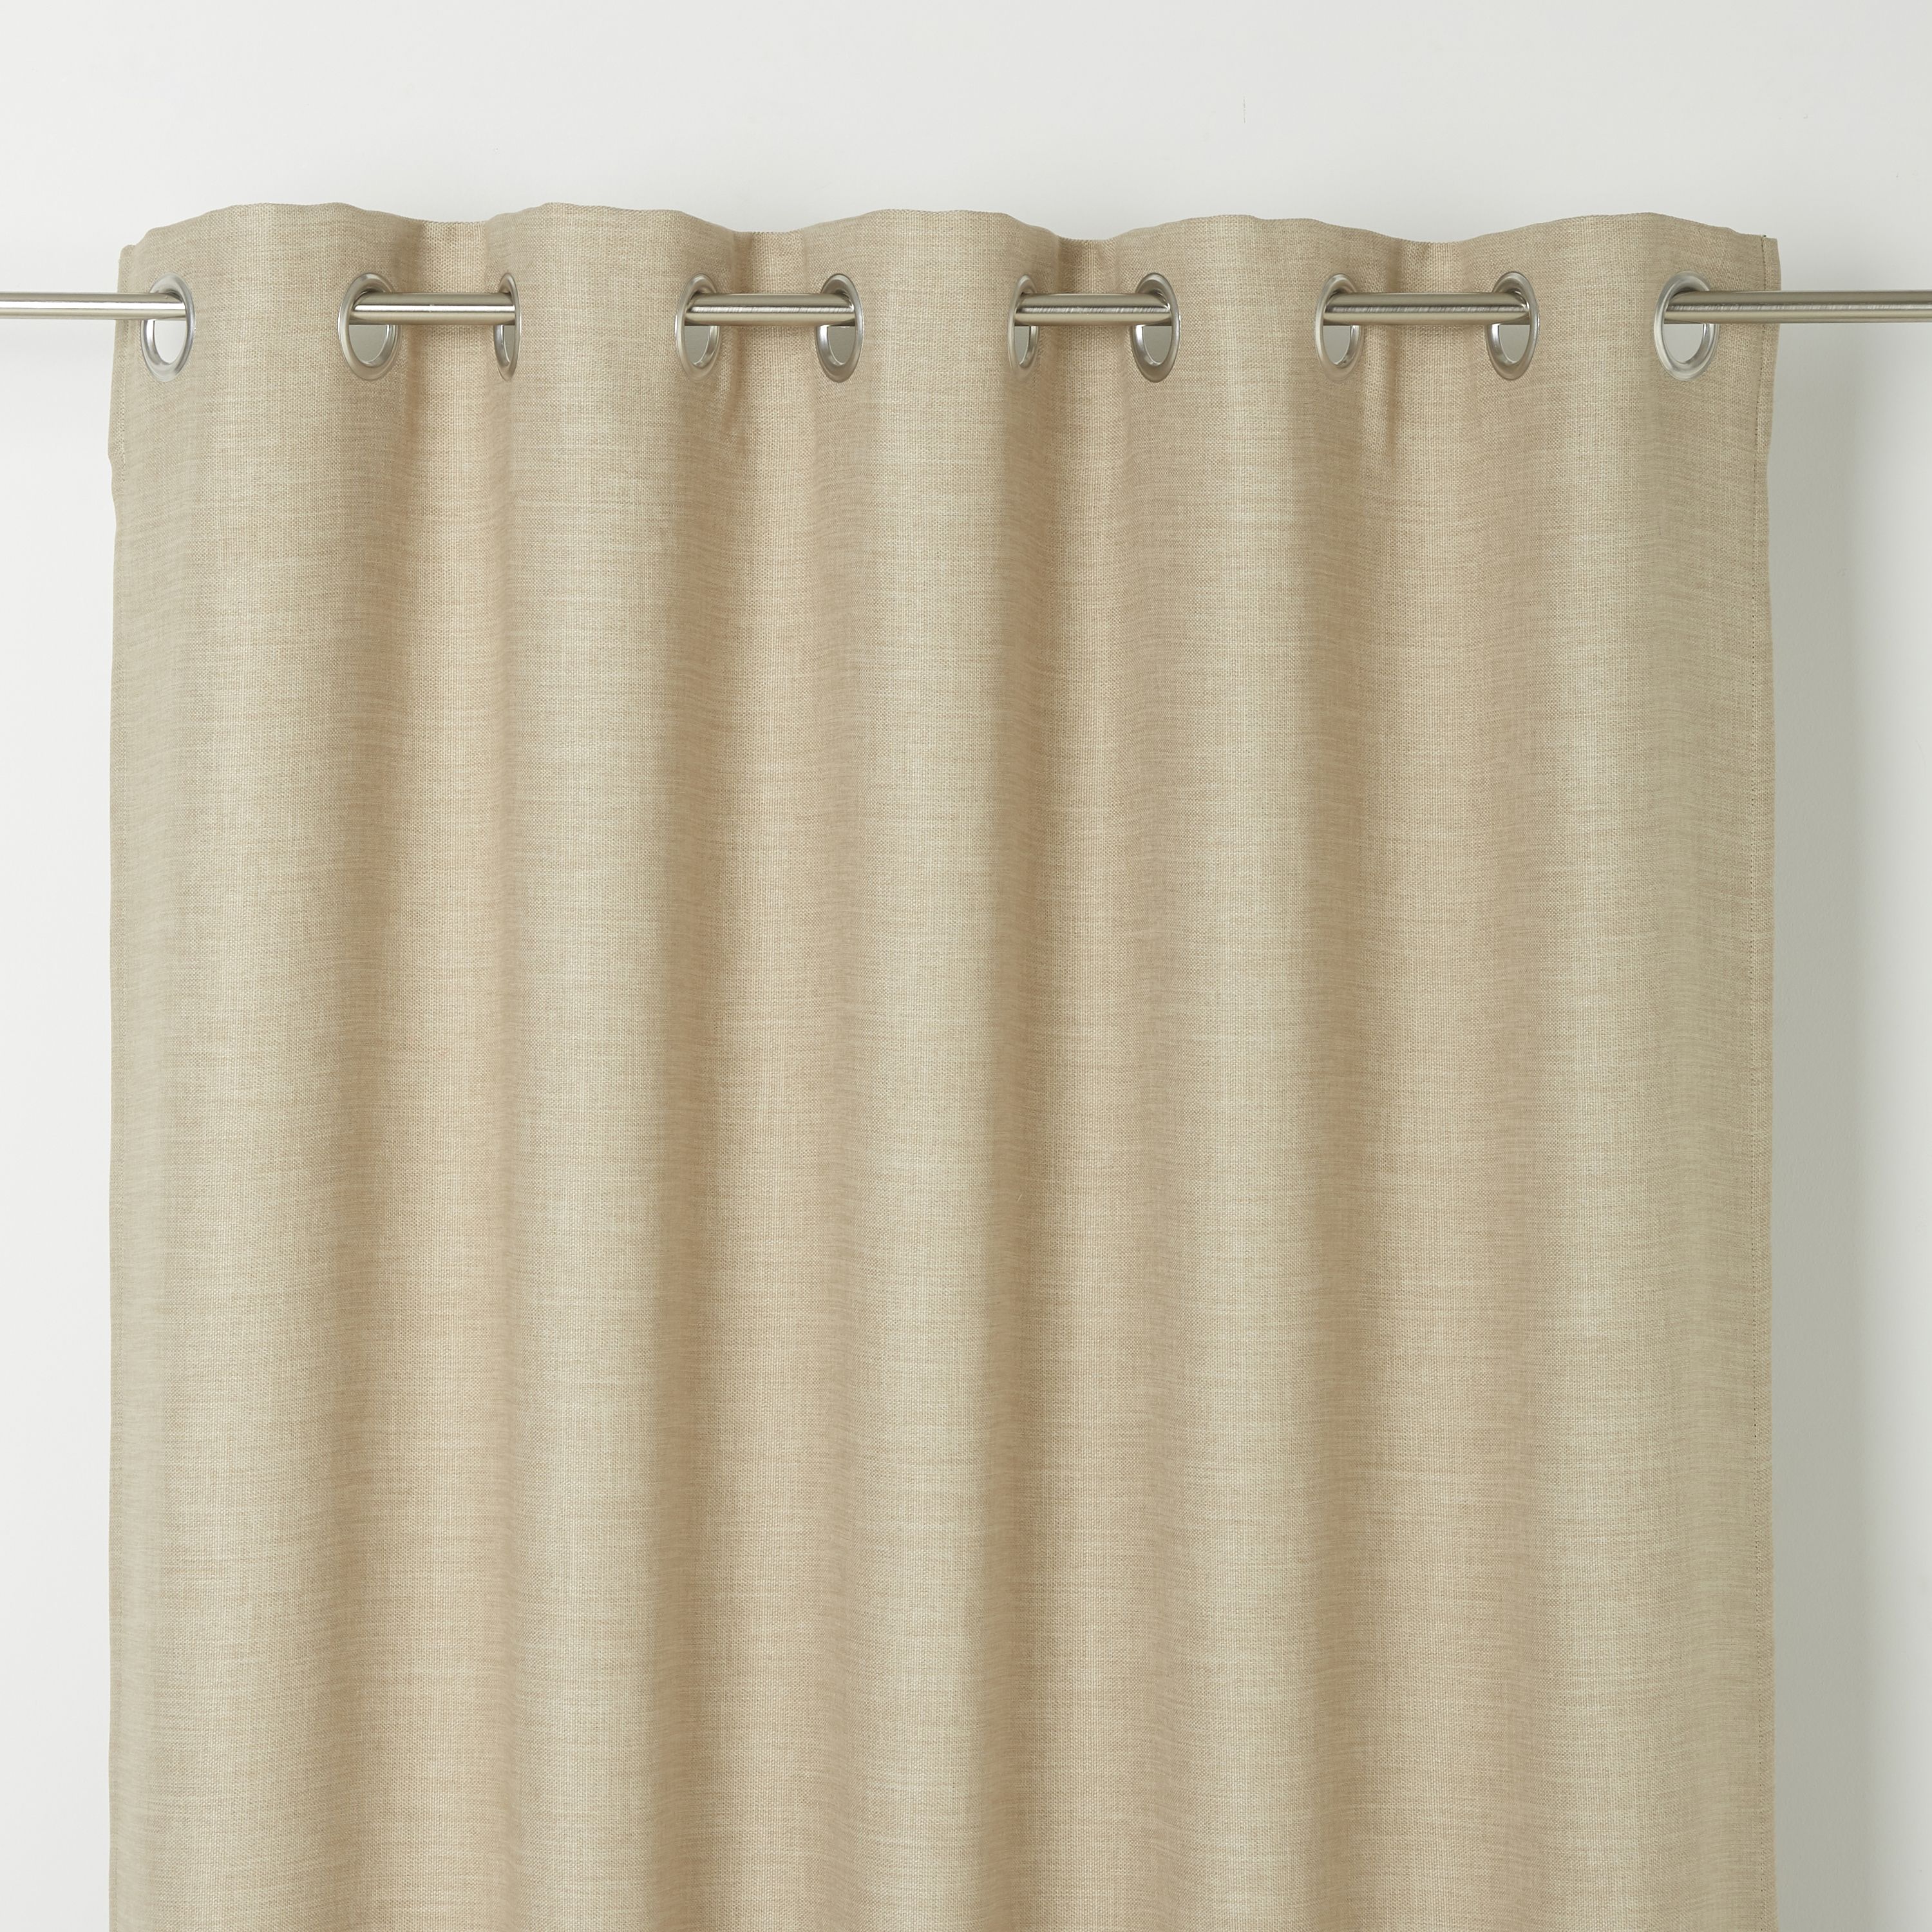 Novan Beige Plain Blackout Eyelet Curtain (W)117cm (L)137cm, Single